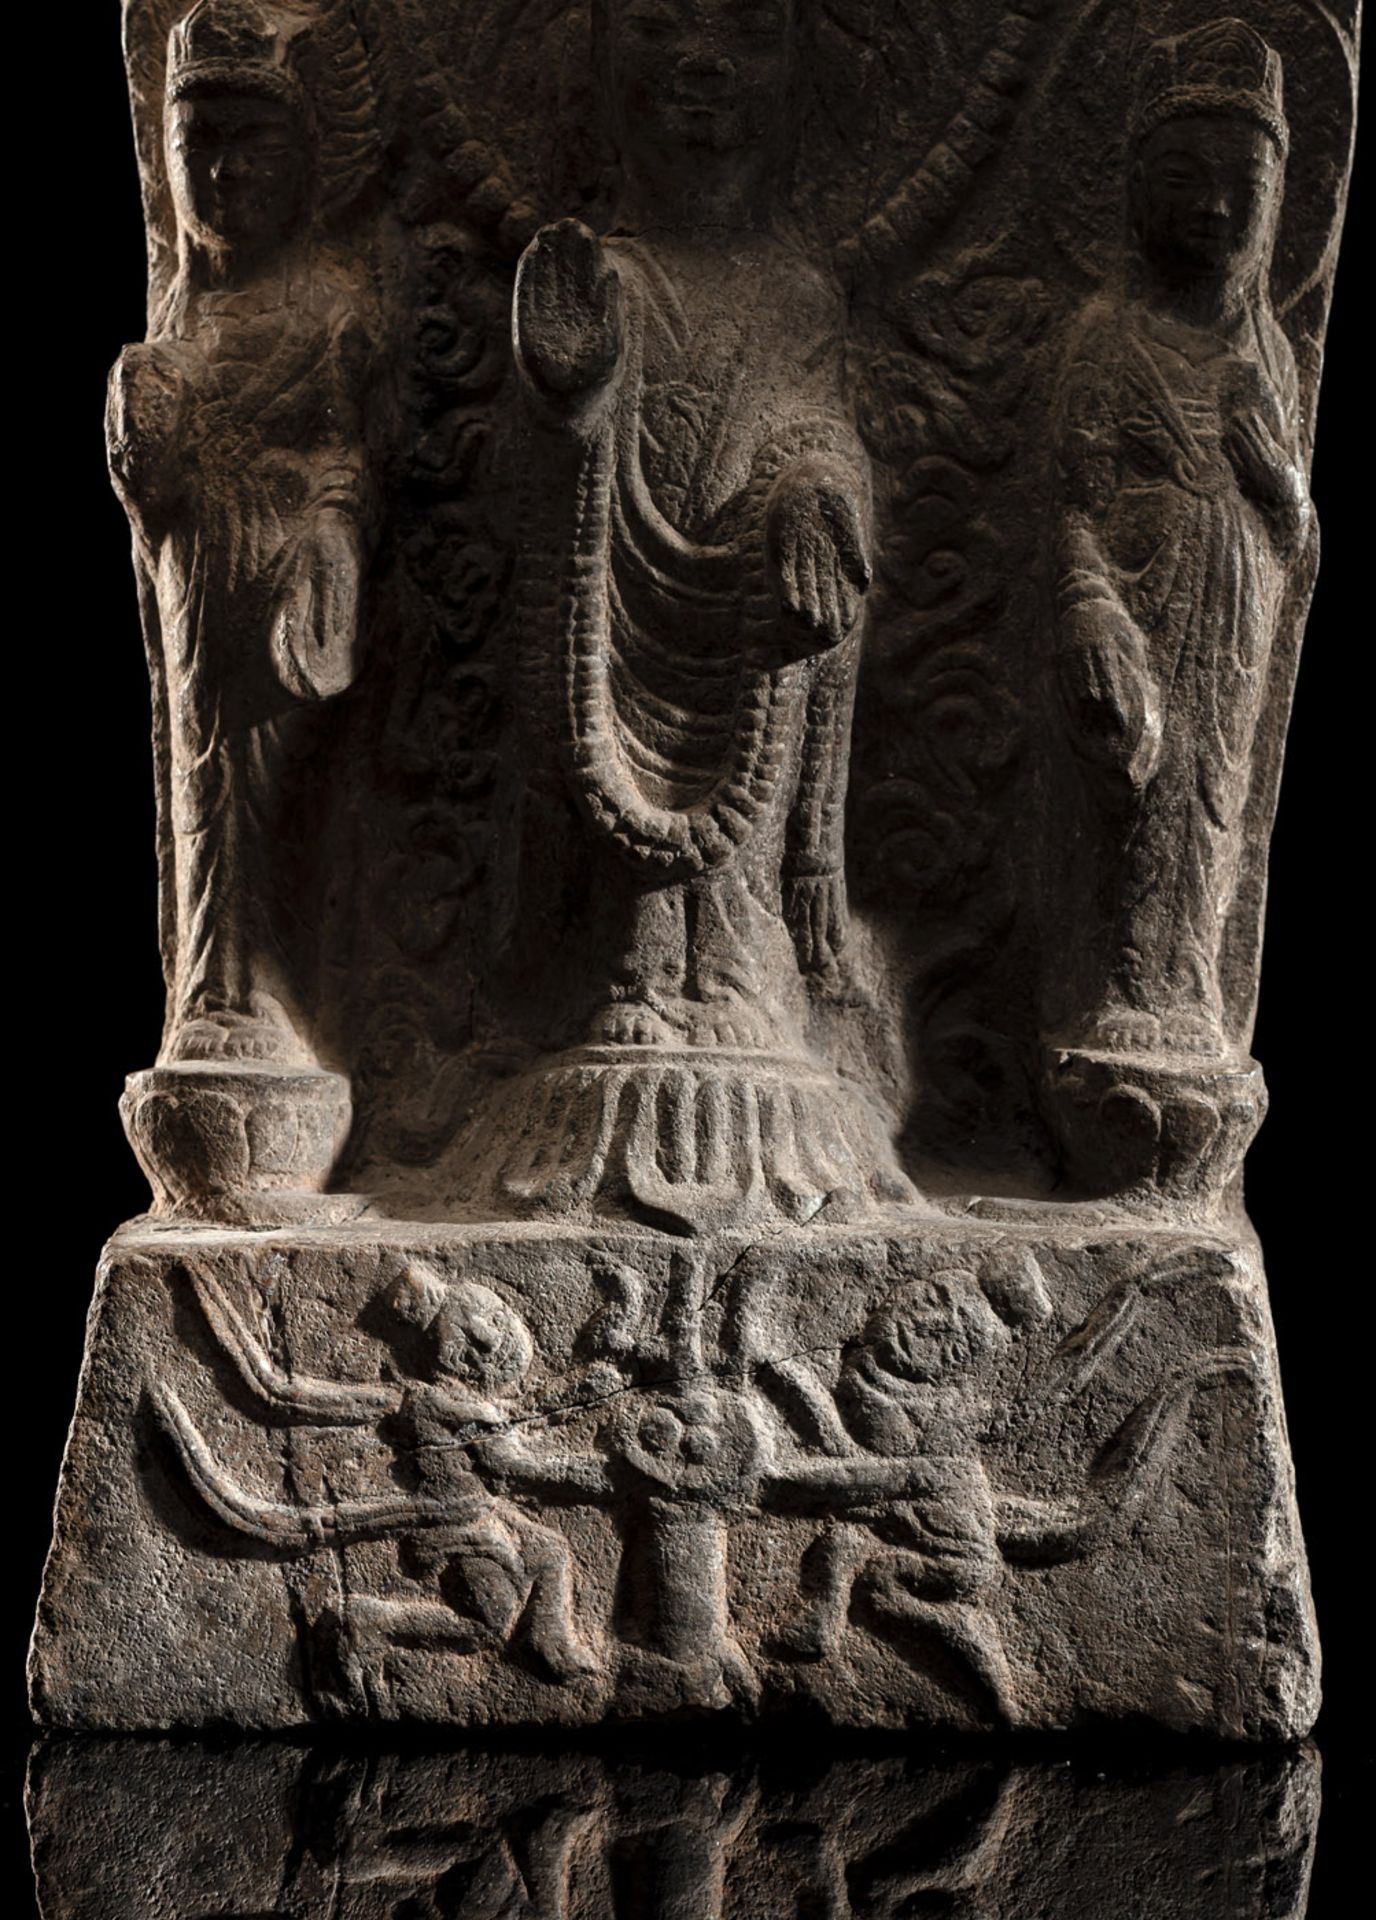 A RARE LIMESTONE STELE DEPICTING BUDDHA SHAKYAMUNI - Image 6 of 6